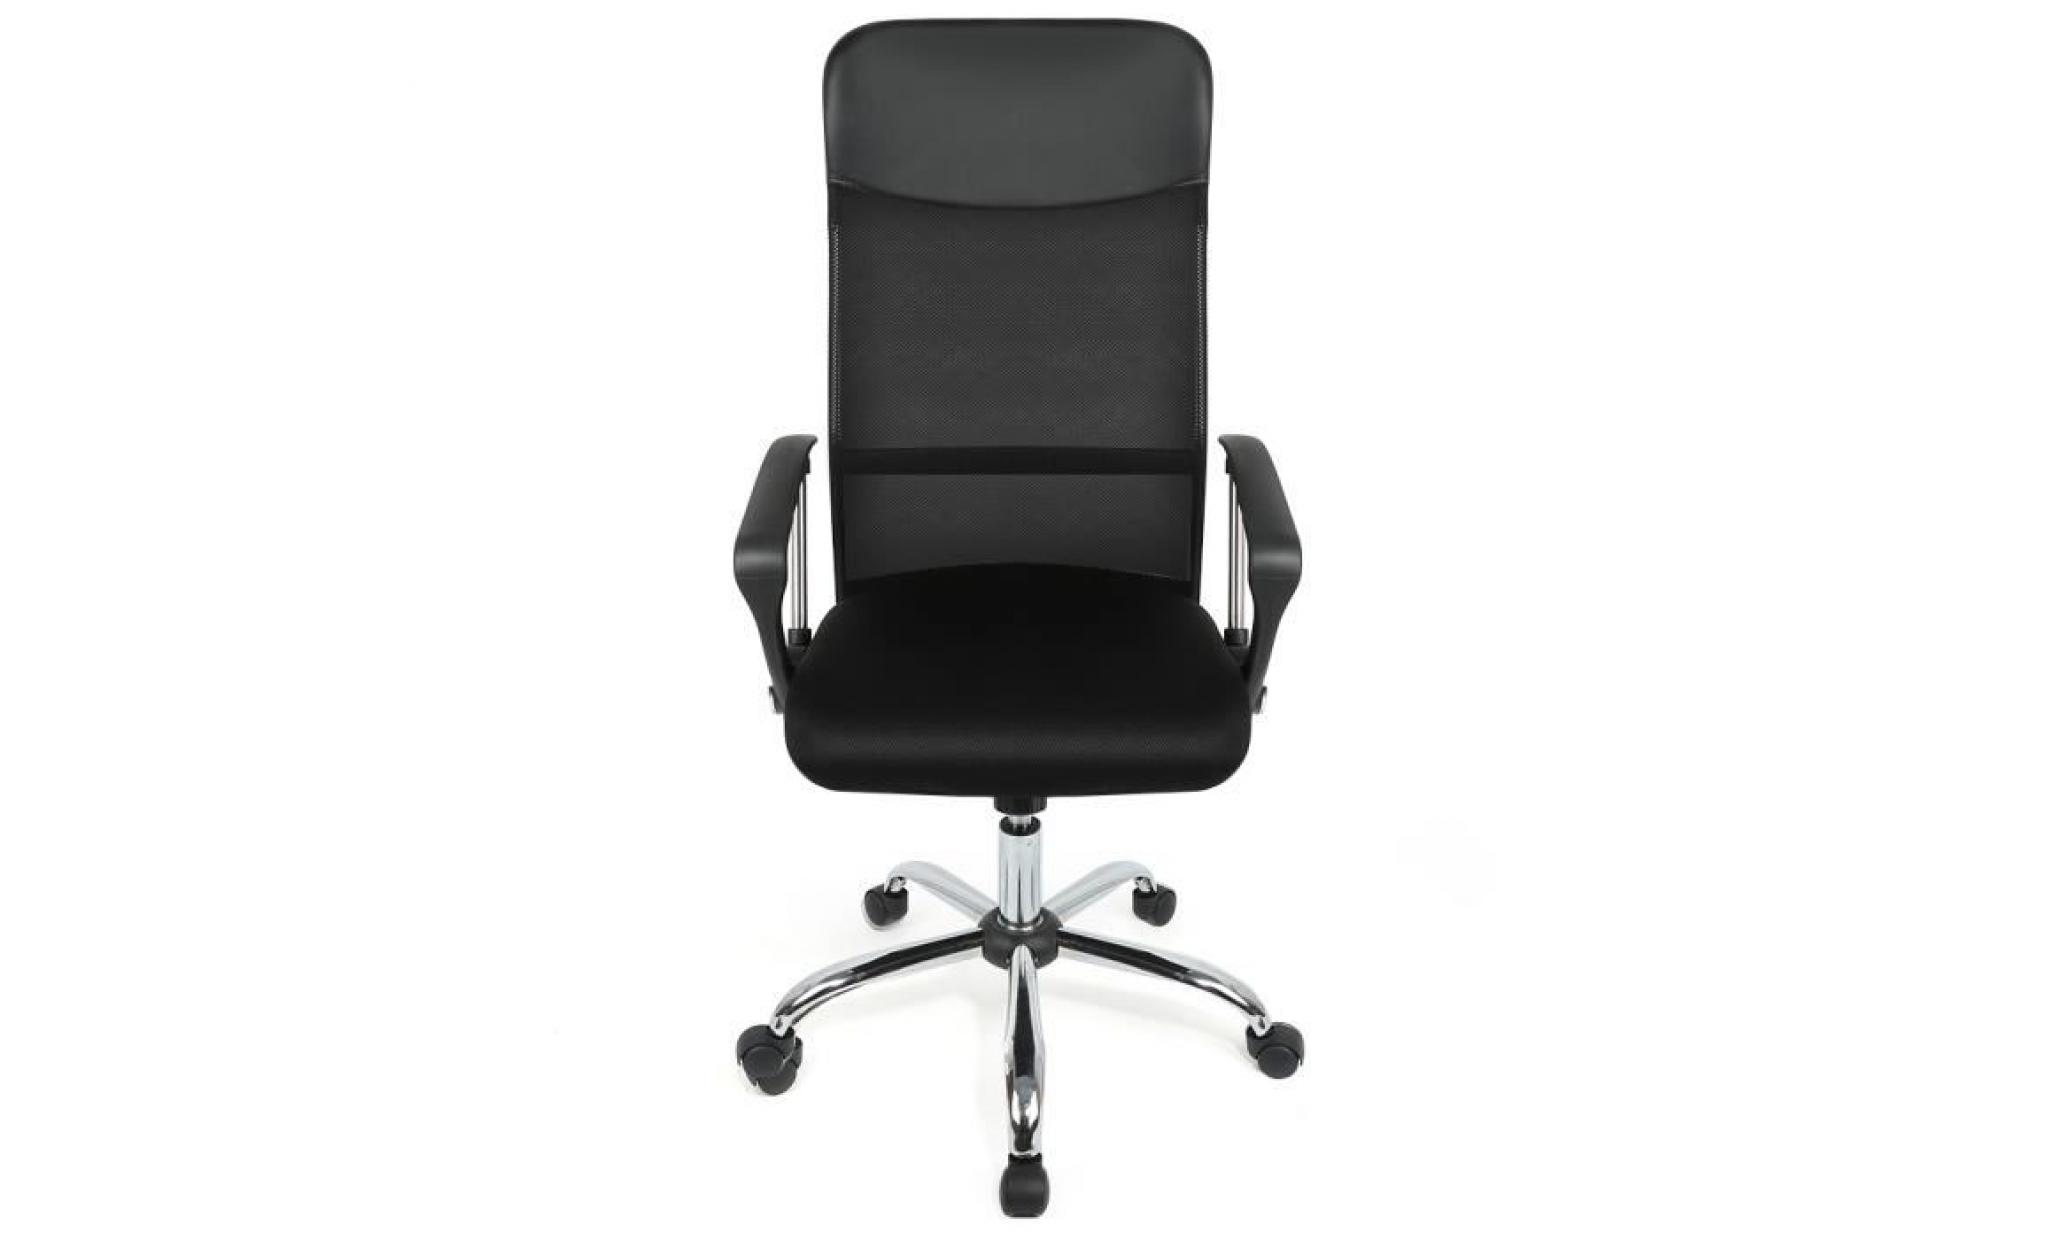 luxs chaise de bureau confortable fauteuil de direction siège ergonomique avec accoudoirs pliables hauteur réglable